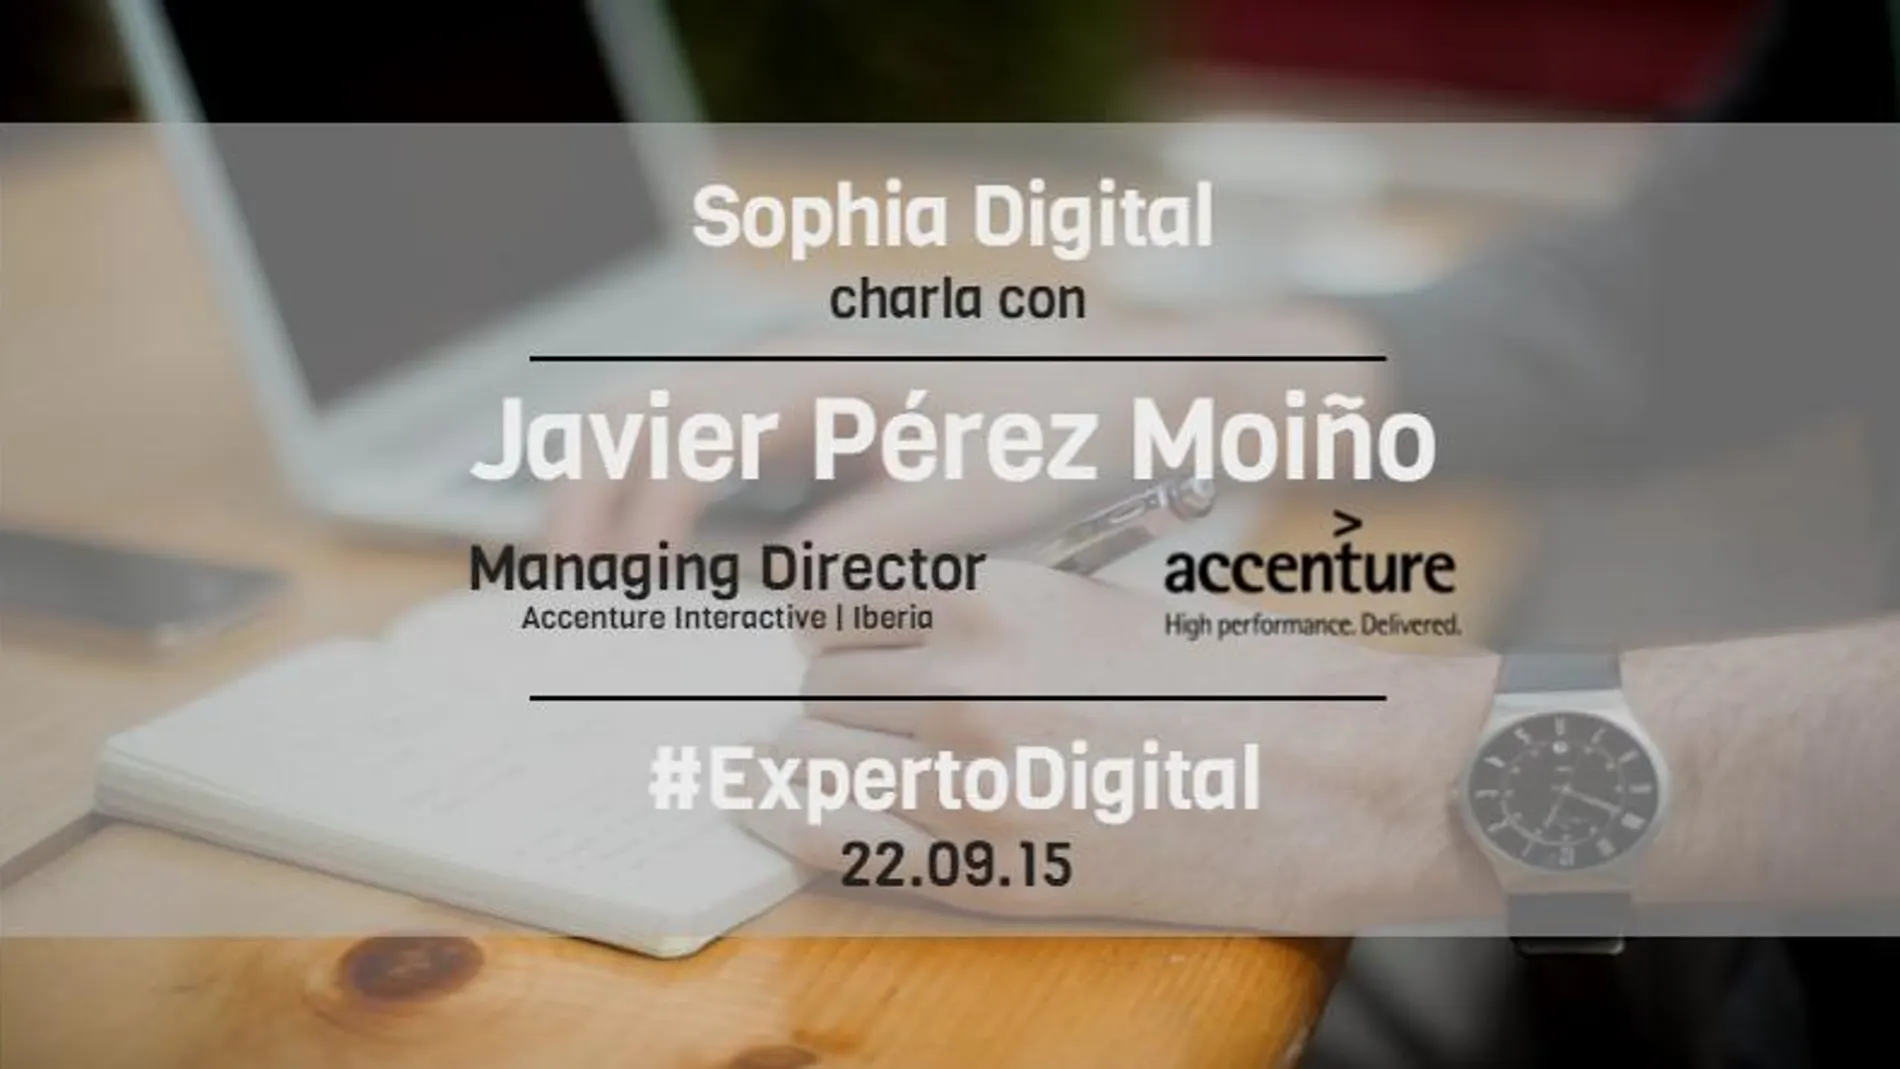 El experto Digital | Javier Pérez Moiño: "En un entorno tan cambiante, es necesario asegurar la formación continua de los equipos"